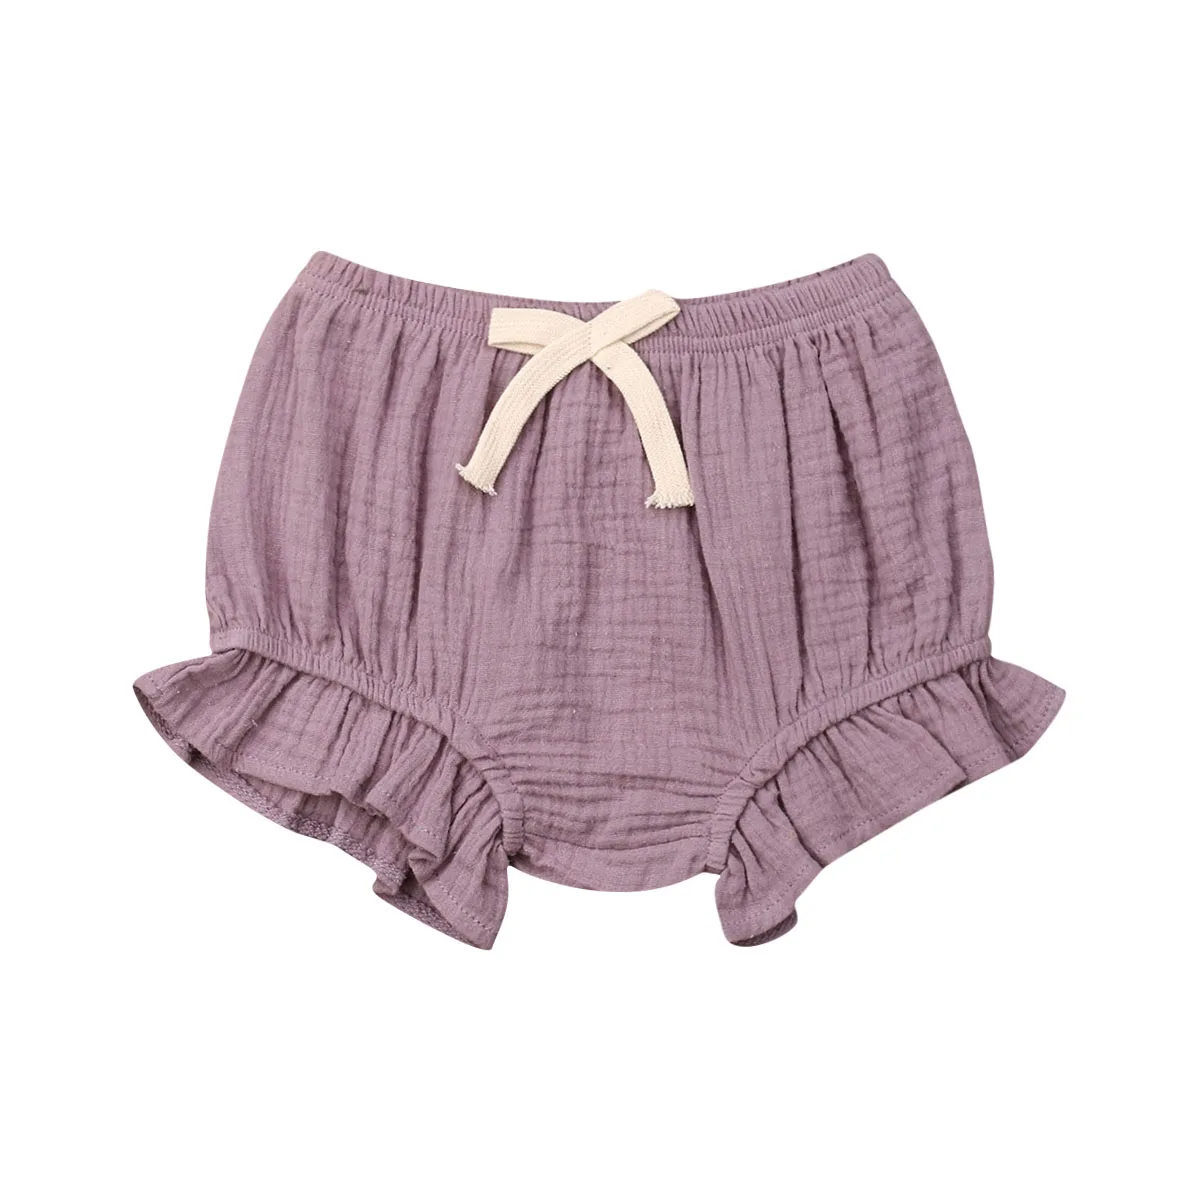 Новорожденных для маленьких девочек хлопковые шорты шаровары подгузники шорты с оборками однотонные брюки плавки Летняя Одежда 0-18 M - Цвет: Фиолетовый